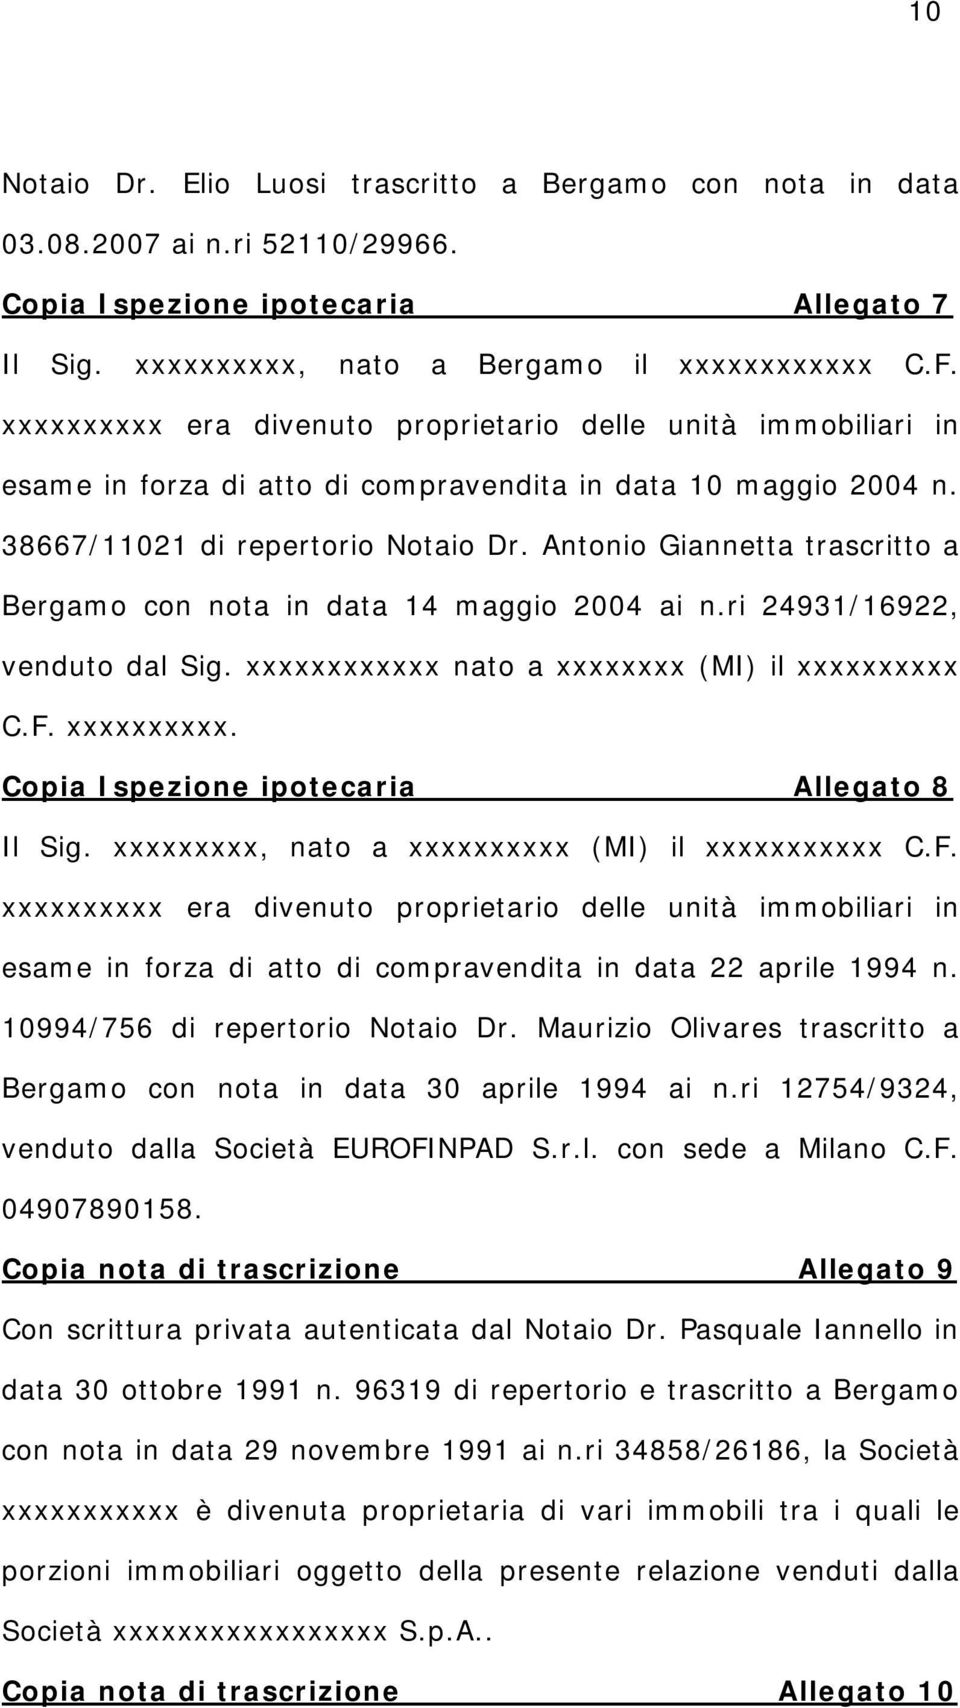 Antonio Giannetta trascritto a Bergamo con nota in data 14 maggio 2004 ai n.ri 24931/16922, venduto dal Sig. xxxxxxxxxxxx nato a xxxxxxxx (MI) il xxxxxxxxxx C.F. xxxxxxxxxx. Copia Ispezione ipotecaria Allegato 8 Il Sig.